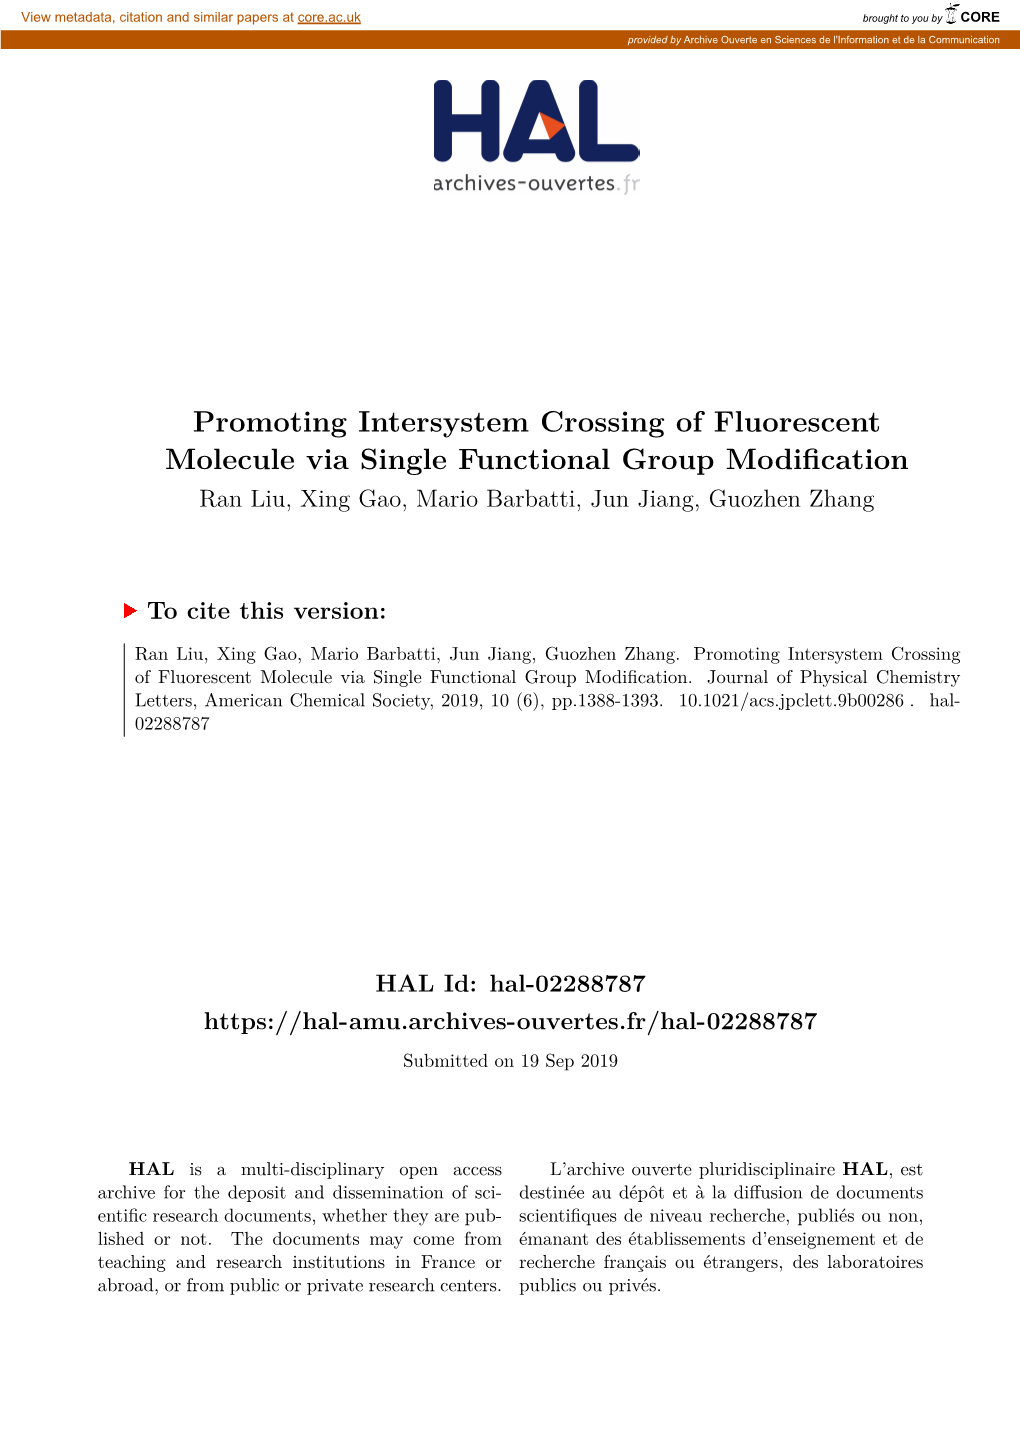 Promoting Intersystem Crossing of Fluorescent Molecule Via Single Functional Group Modification Ran Liu, Xing Gao, Mario Barbatti, Jun Jiang, Guozhen Zhang